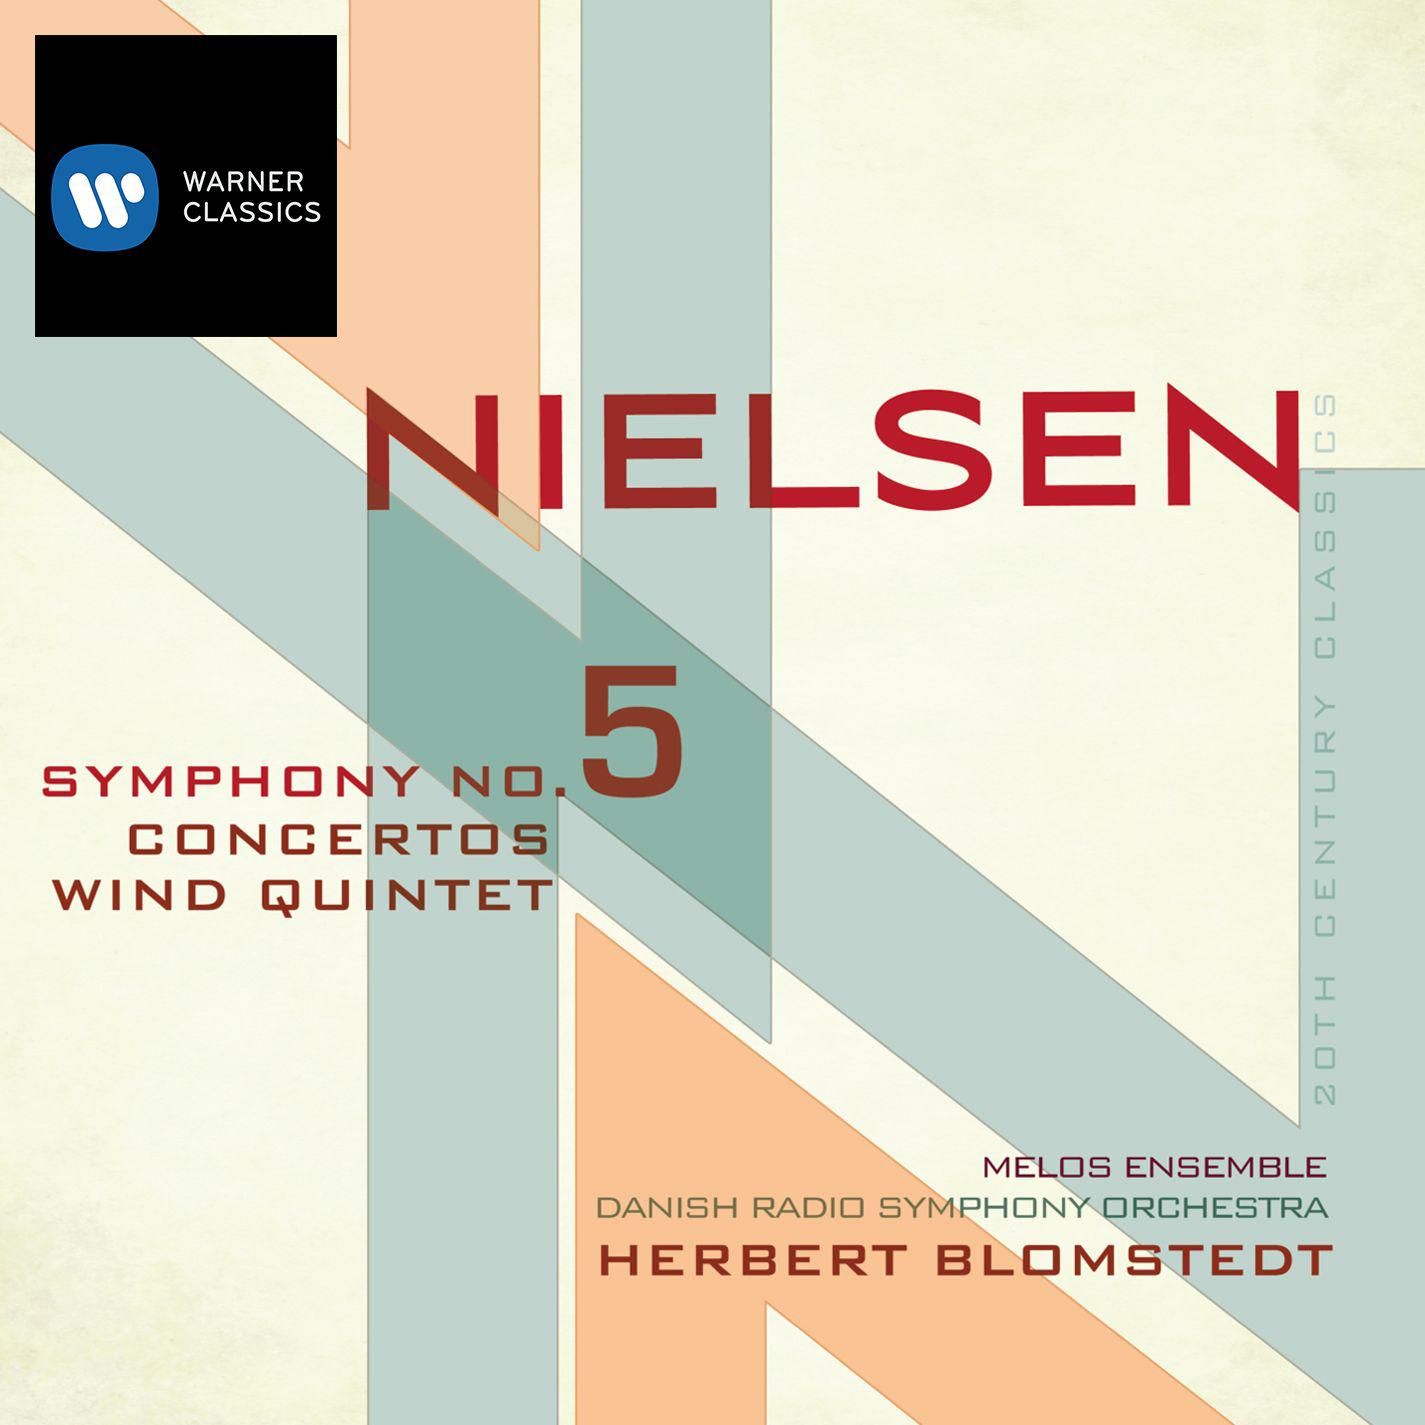 Wind Quintet, Op. 43: I. Allegro ben moderato